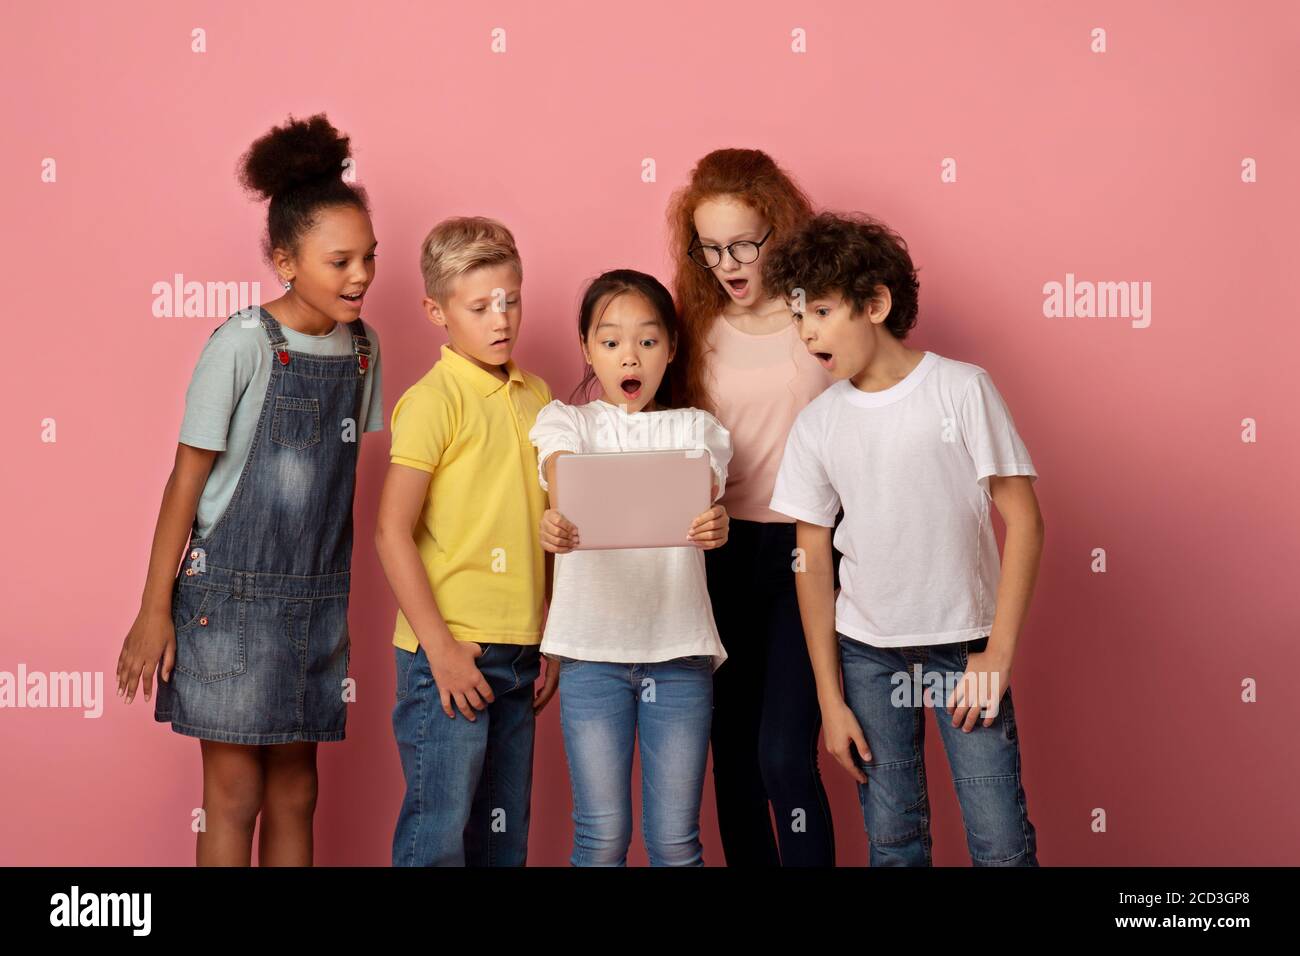 Schockiert Kinder starren in Tablet-Bildschirm zusammen, erstaunt über etwas, rosa Hintergrund Stockfoto